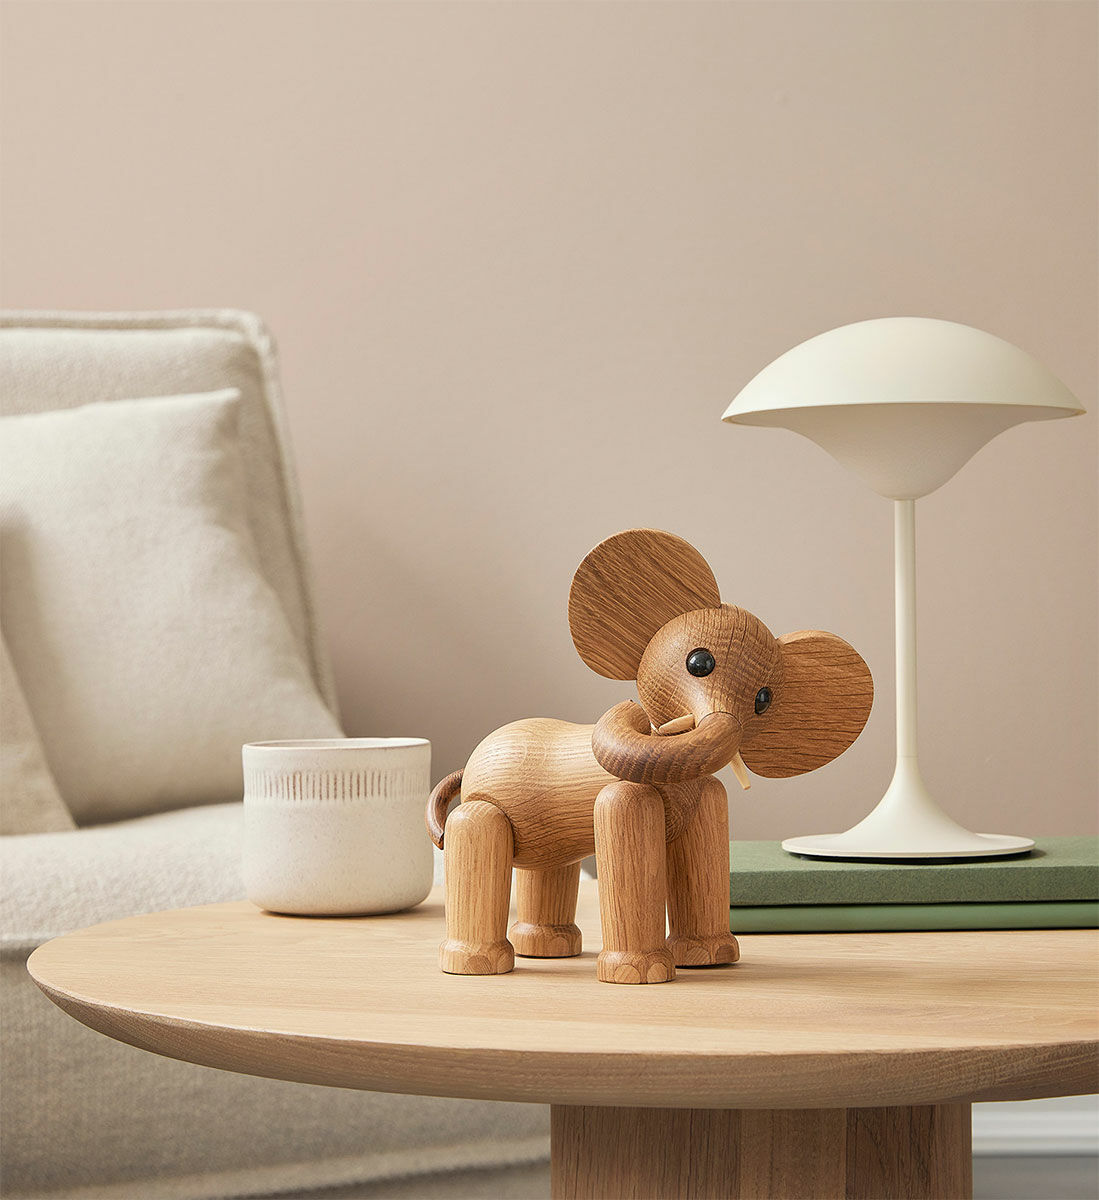 Holzfigur "Elefant Ollie" - Design Chresten Sommer von Spring Copenhagen